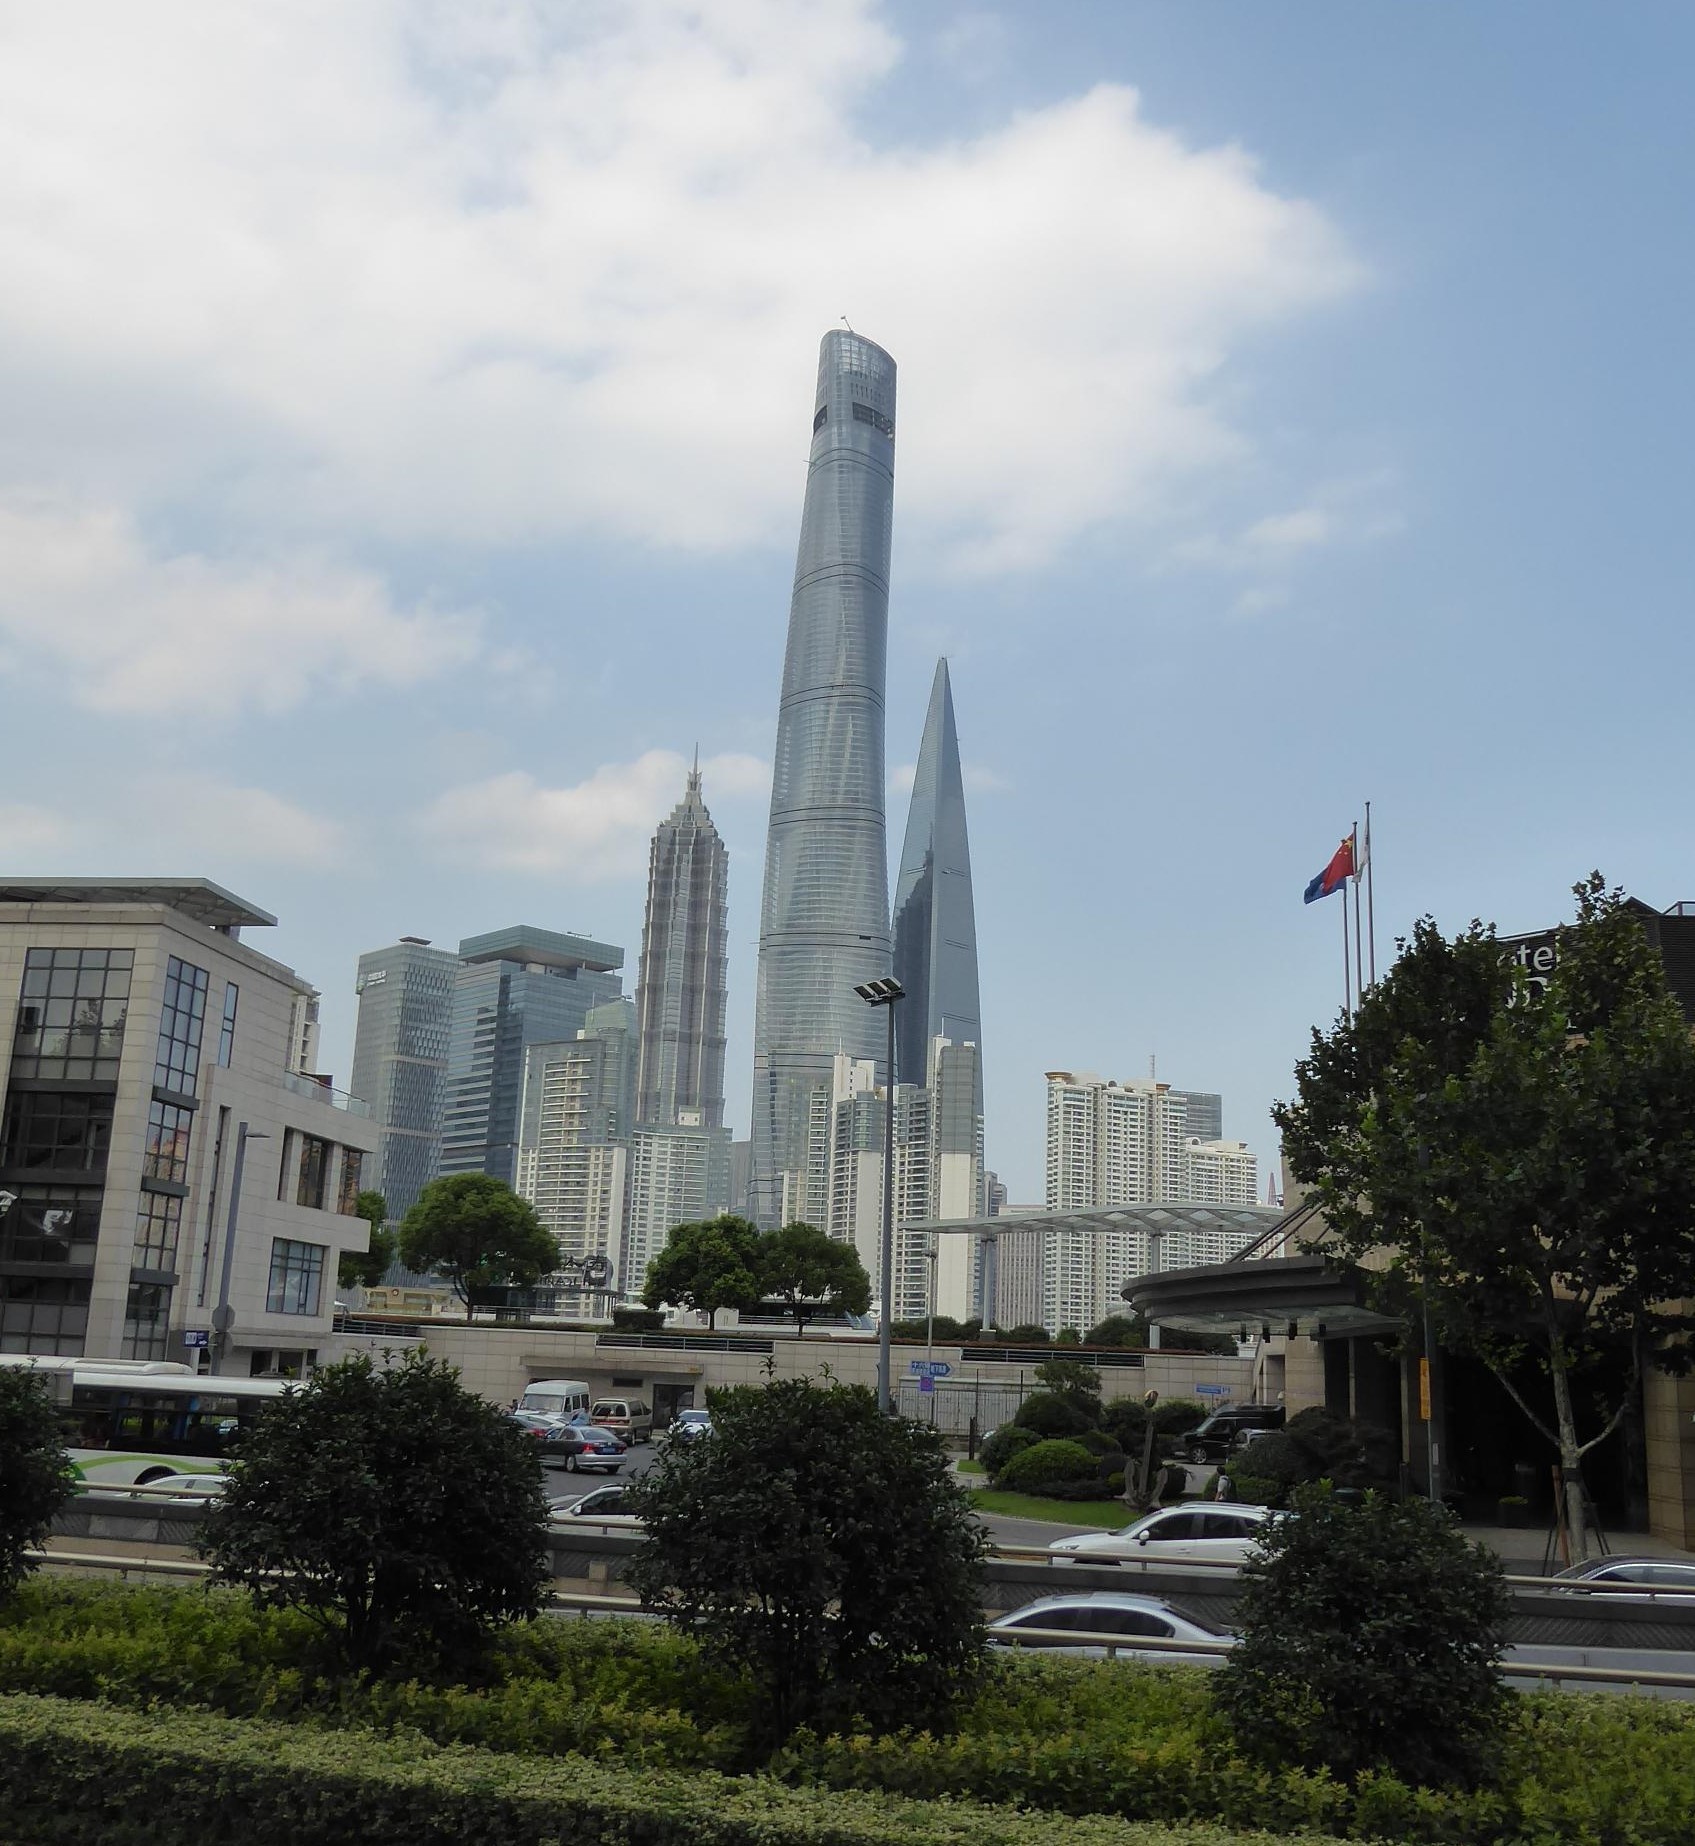 Shanghai Tower medzi ďalšími vežami